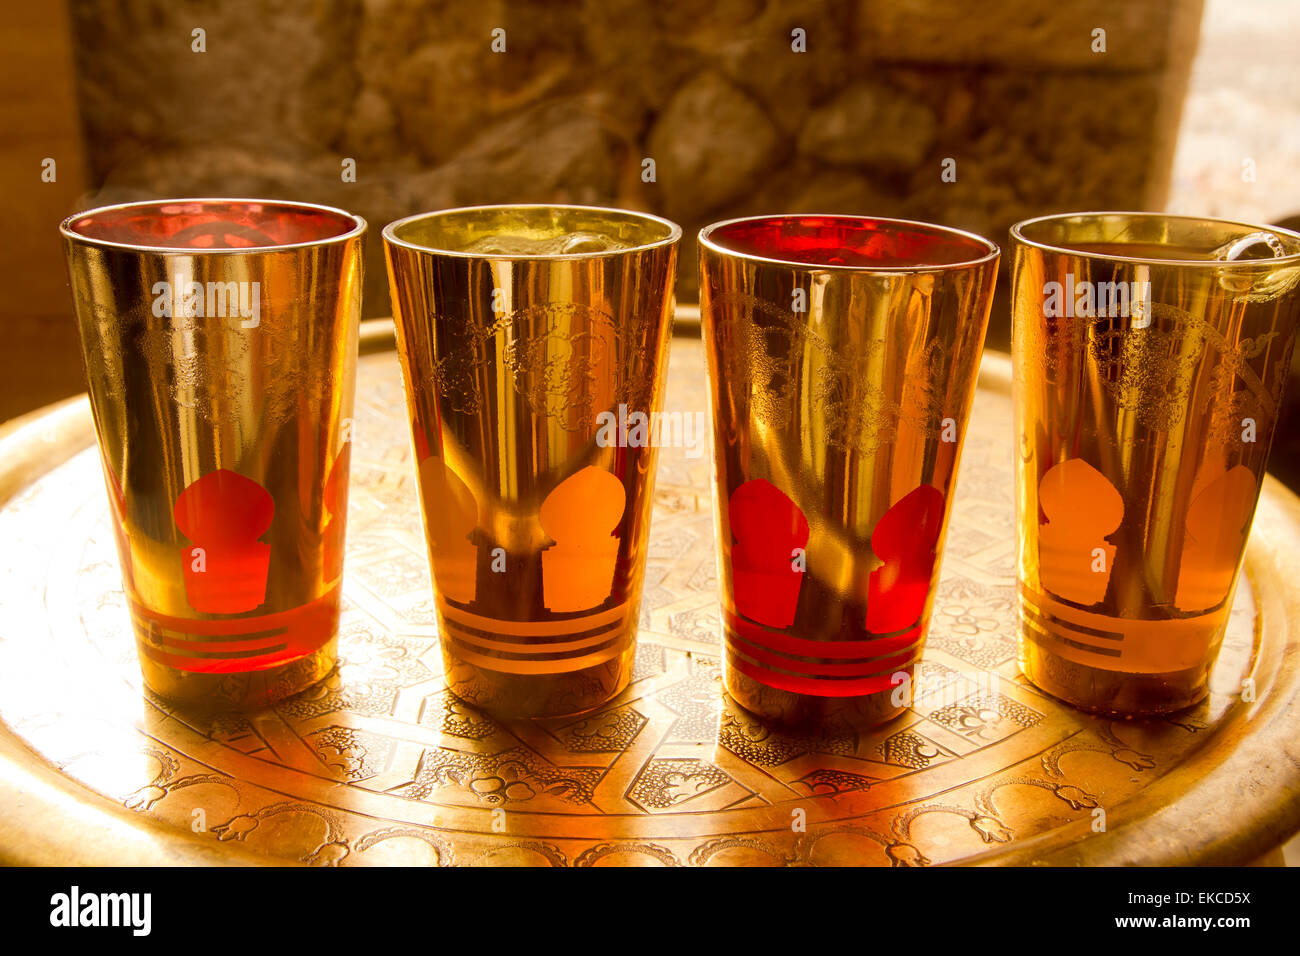 https://c8.alamy.com/comp/EKCD5X/arab-peppermint-tea-golden-glasses-over-golden-tray-EKCD5X.jpg